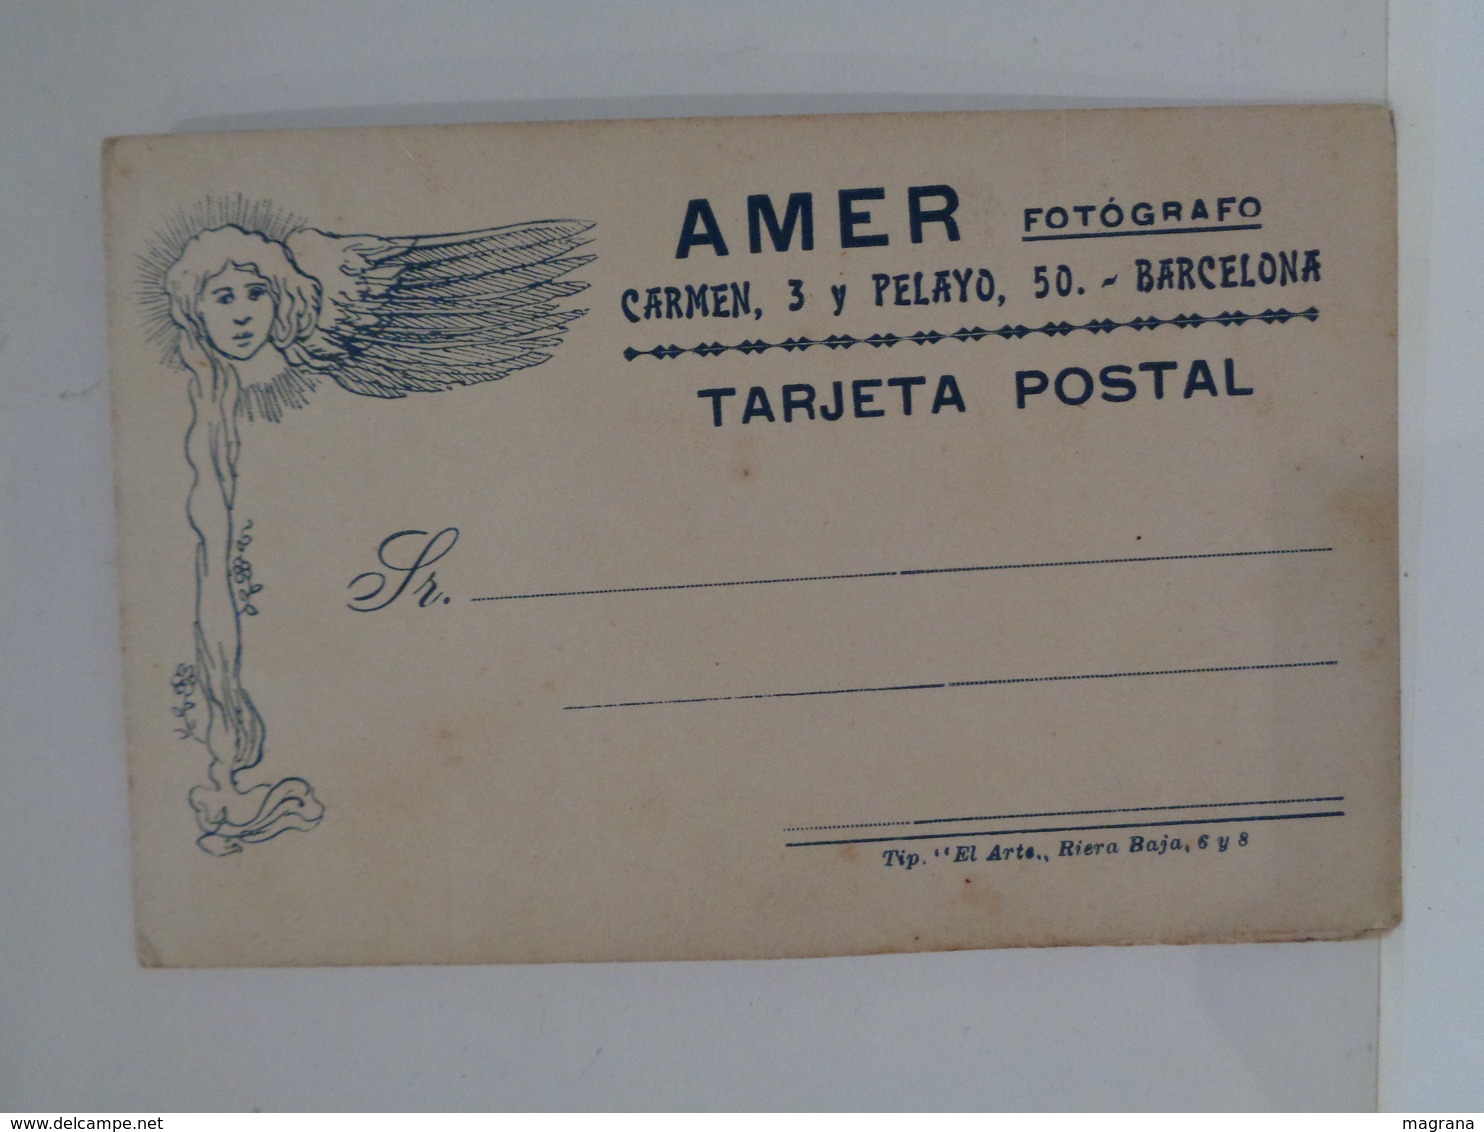 Álbum de Fotos. Finales del siglo XIX a principios siglo XX. Con 29 fotos antiguas. Tarjeta postal y carta de visita.